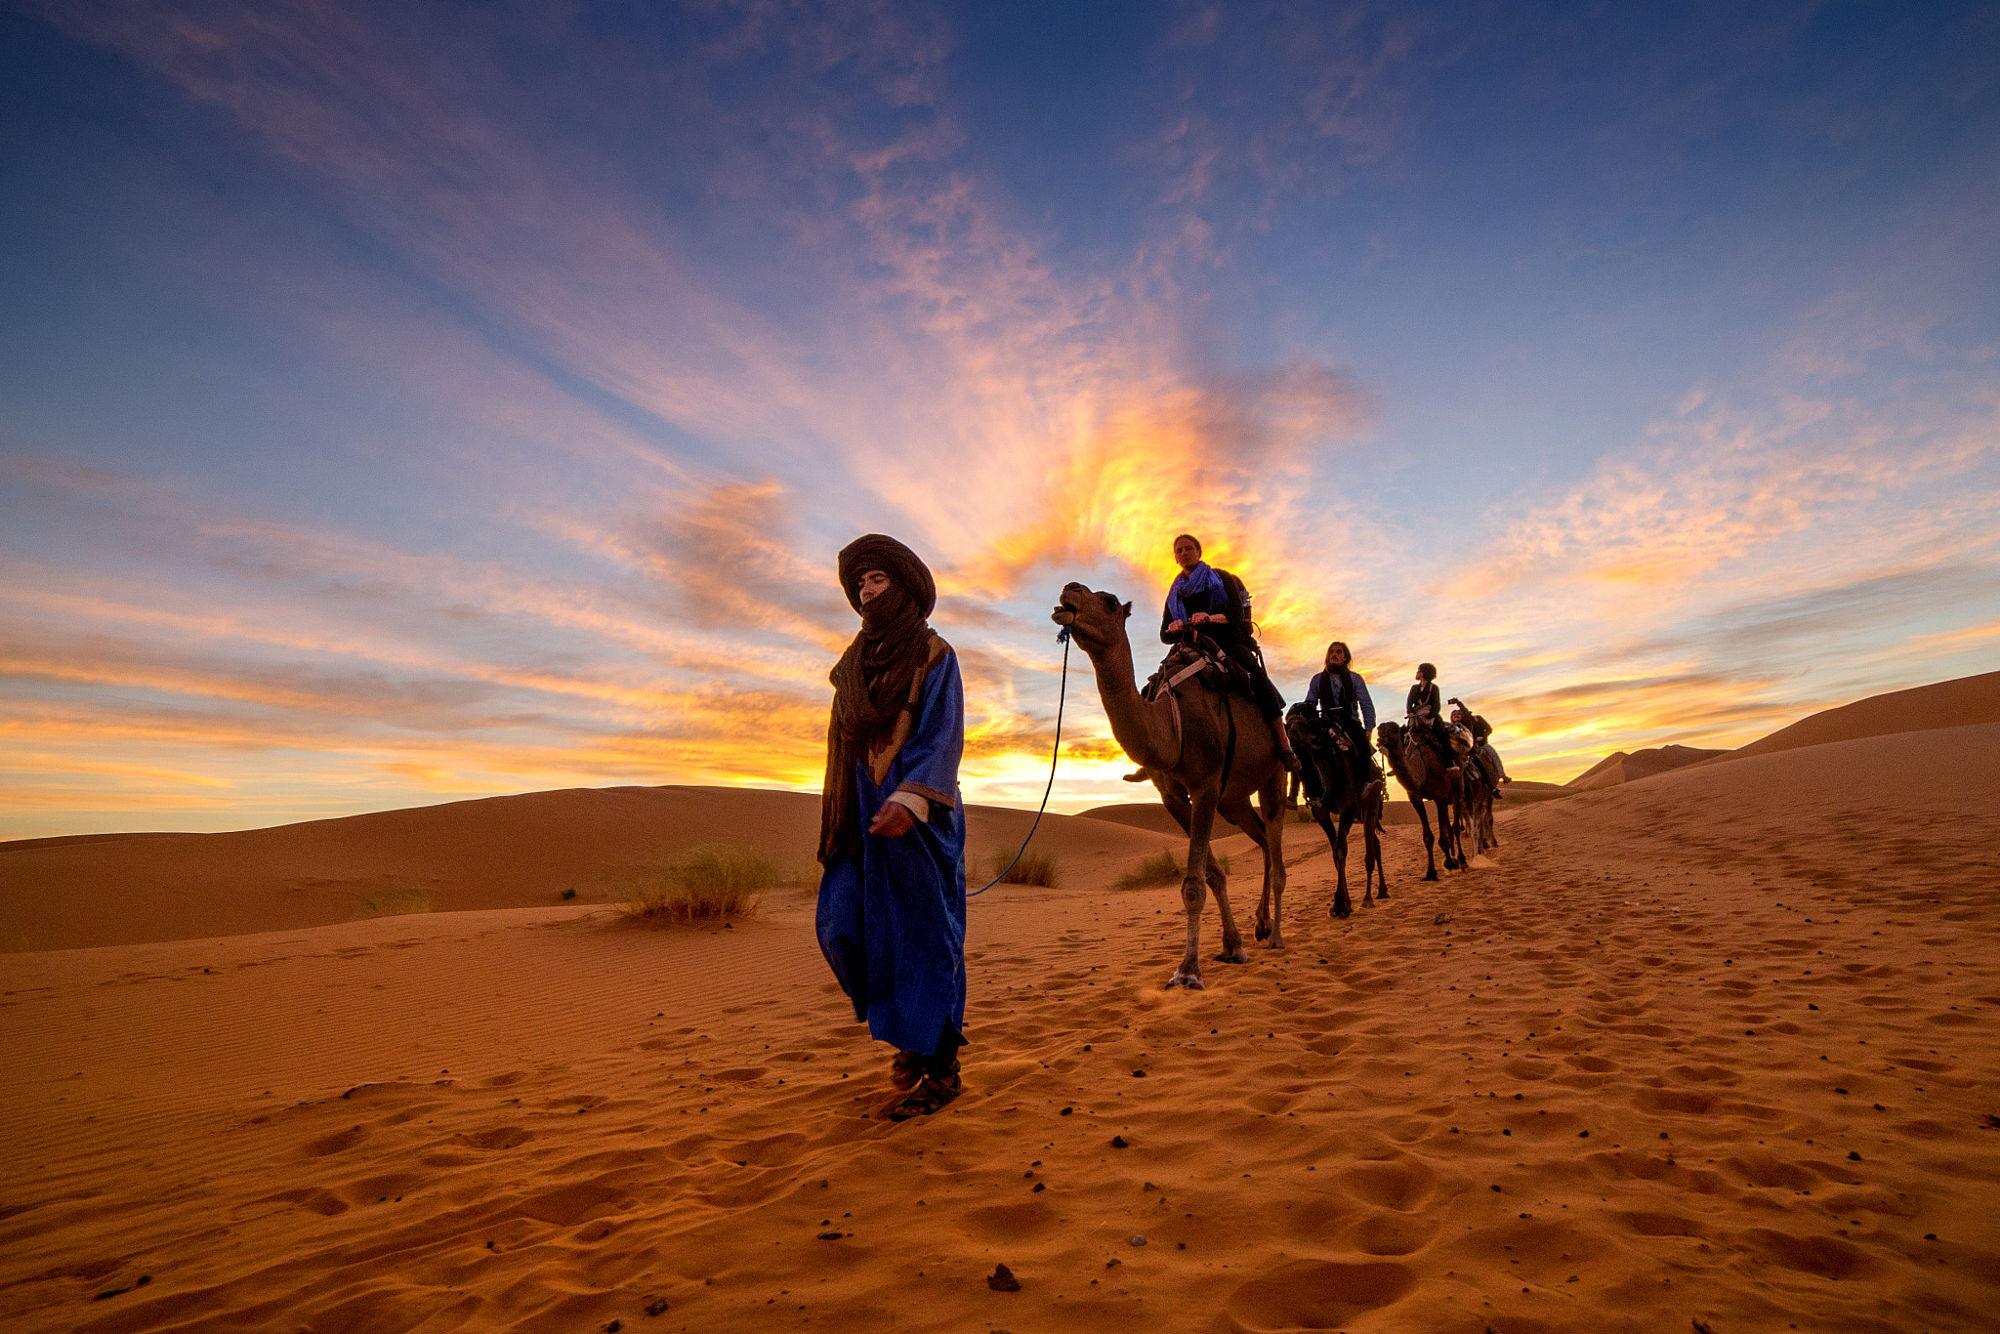 Morocco camel ride tours to explore the Sahara desert of Erg Chigaga